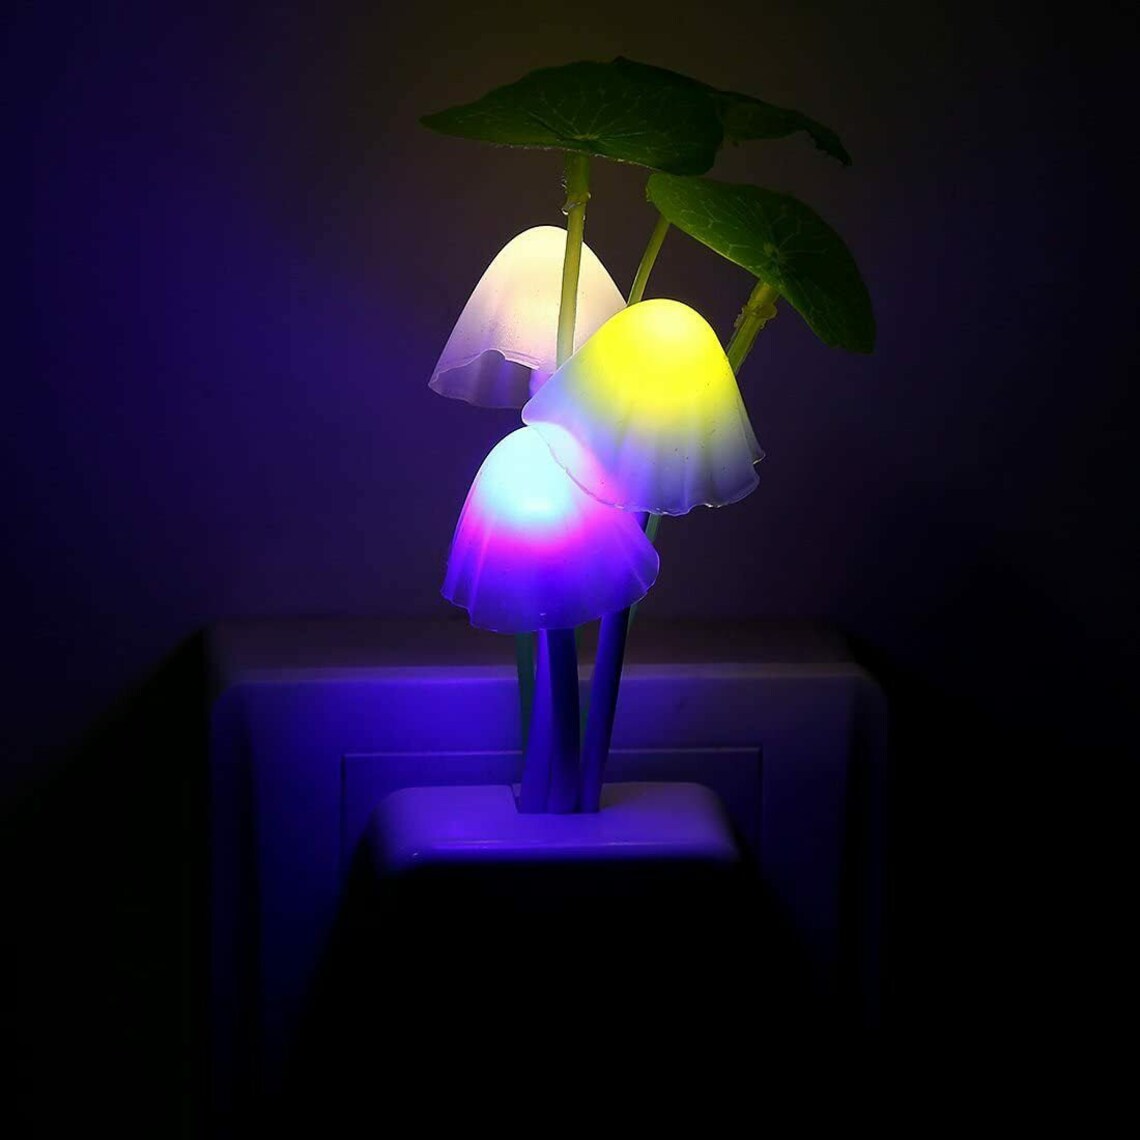 Mushroom Night Light Colorful LED Automatic Nightlight | Etsy